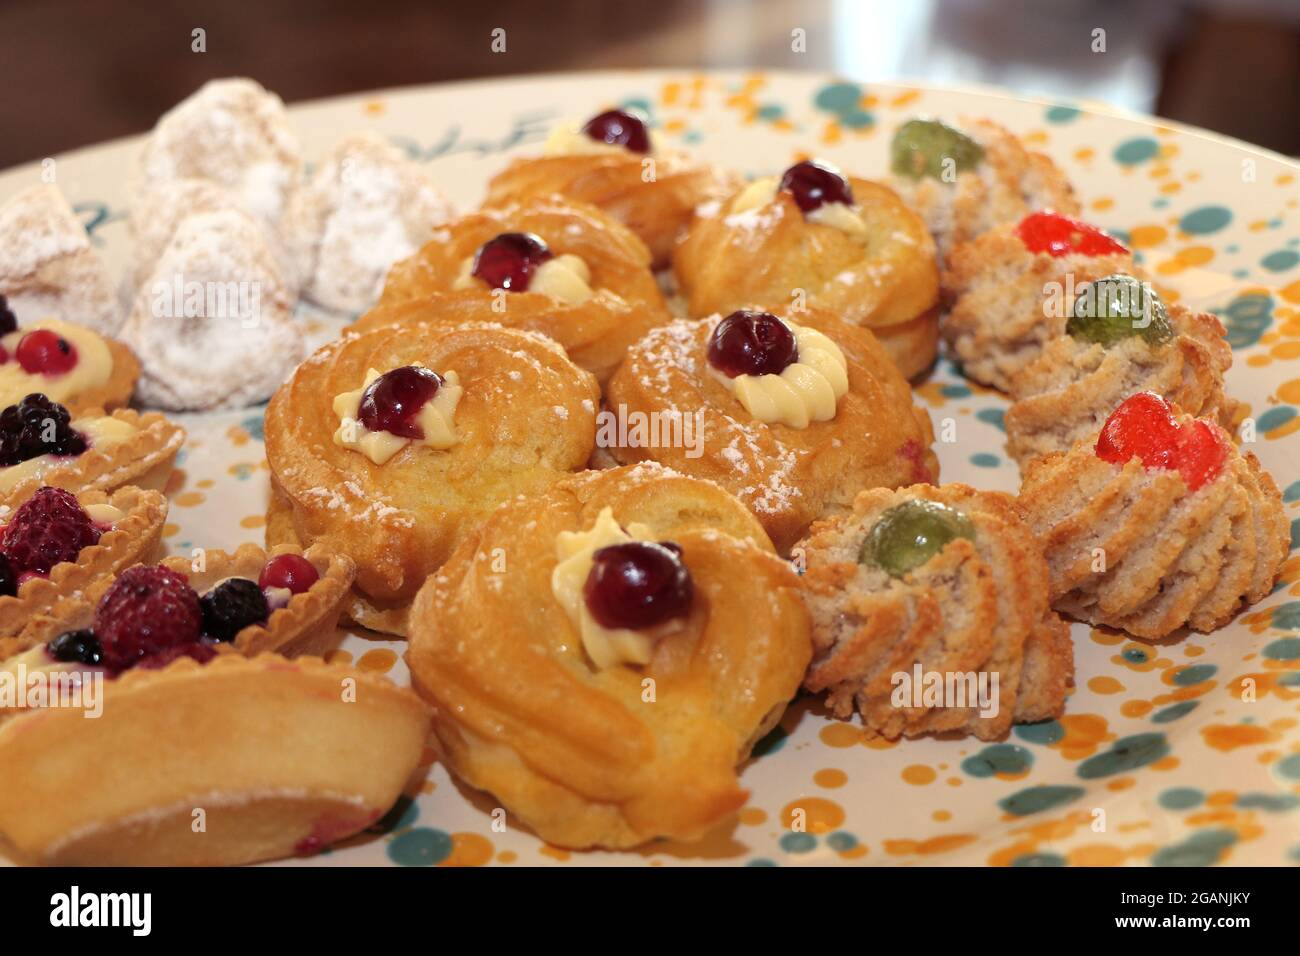 Zepple di San Giuseppe et biscuits aux amandes. Bonbons typiques du sud de l'Italie Banque D'Images